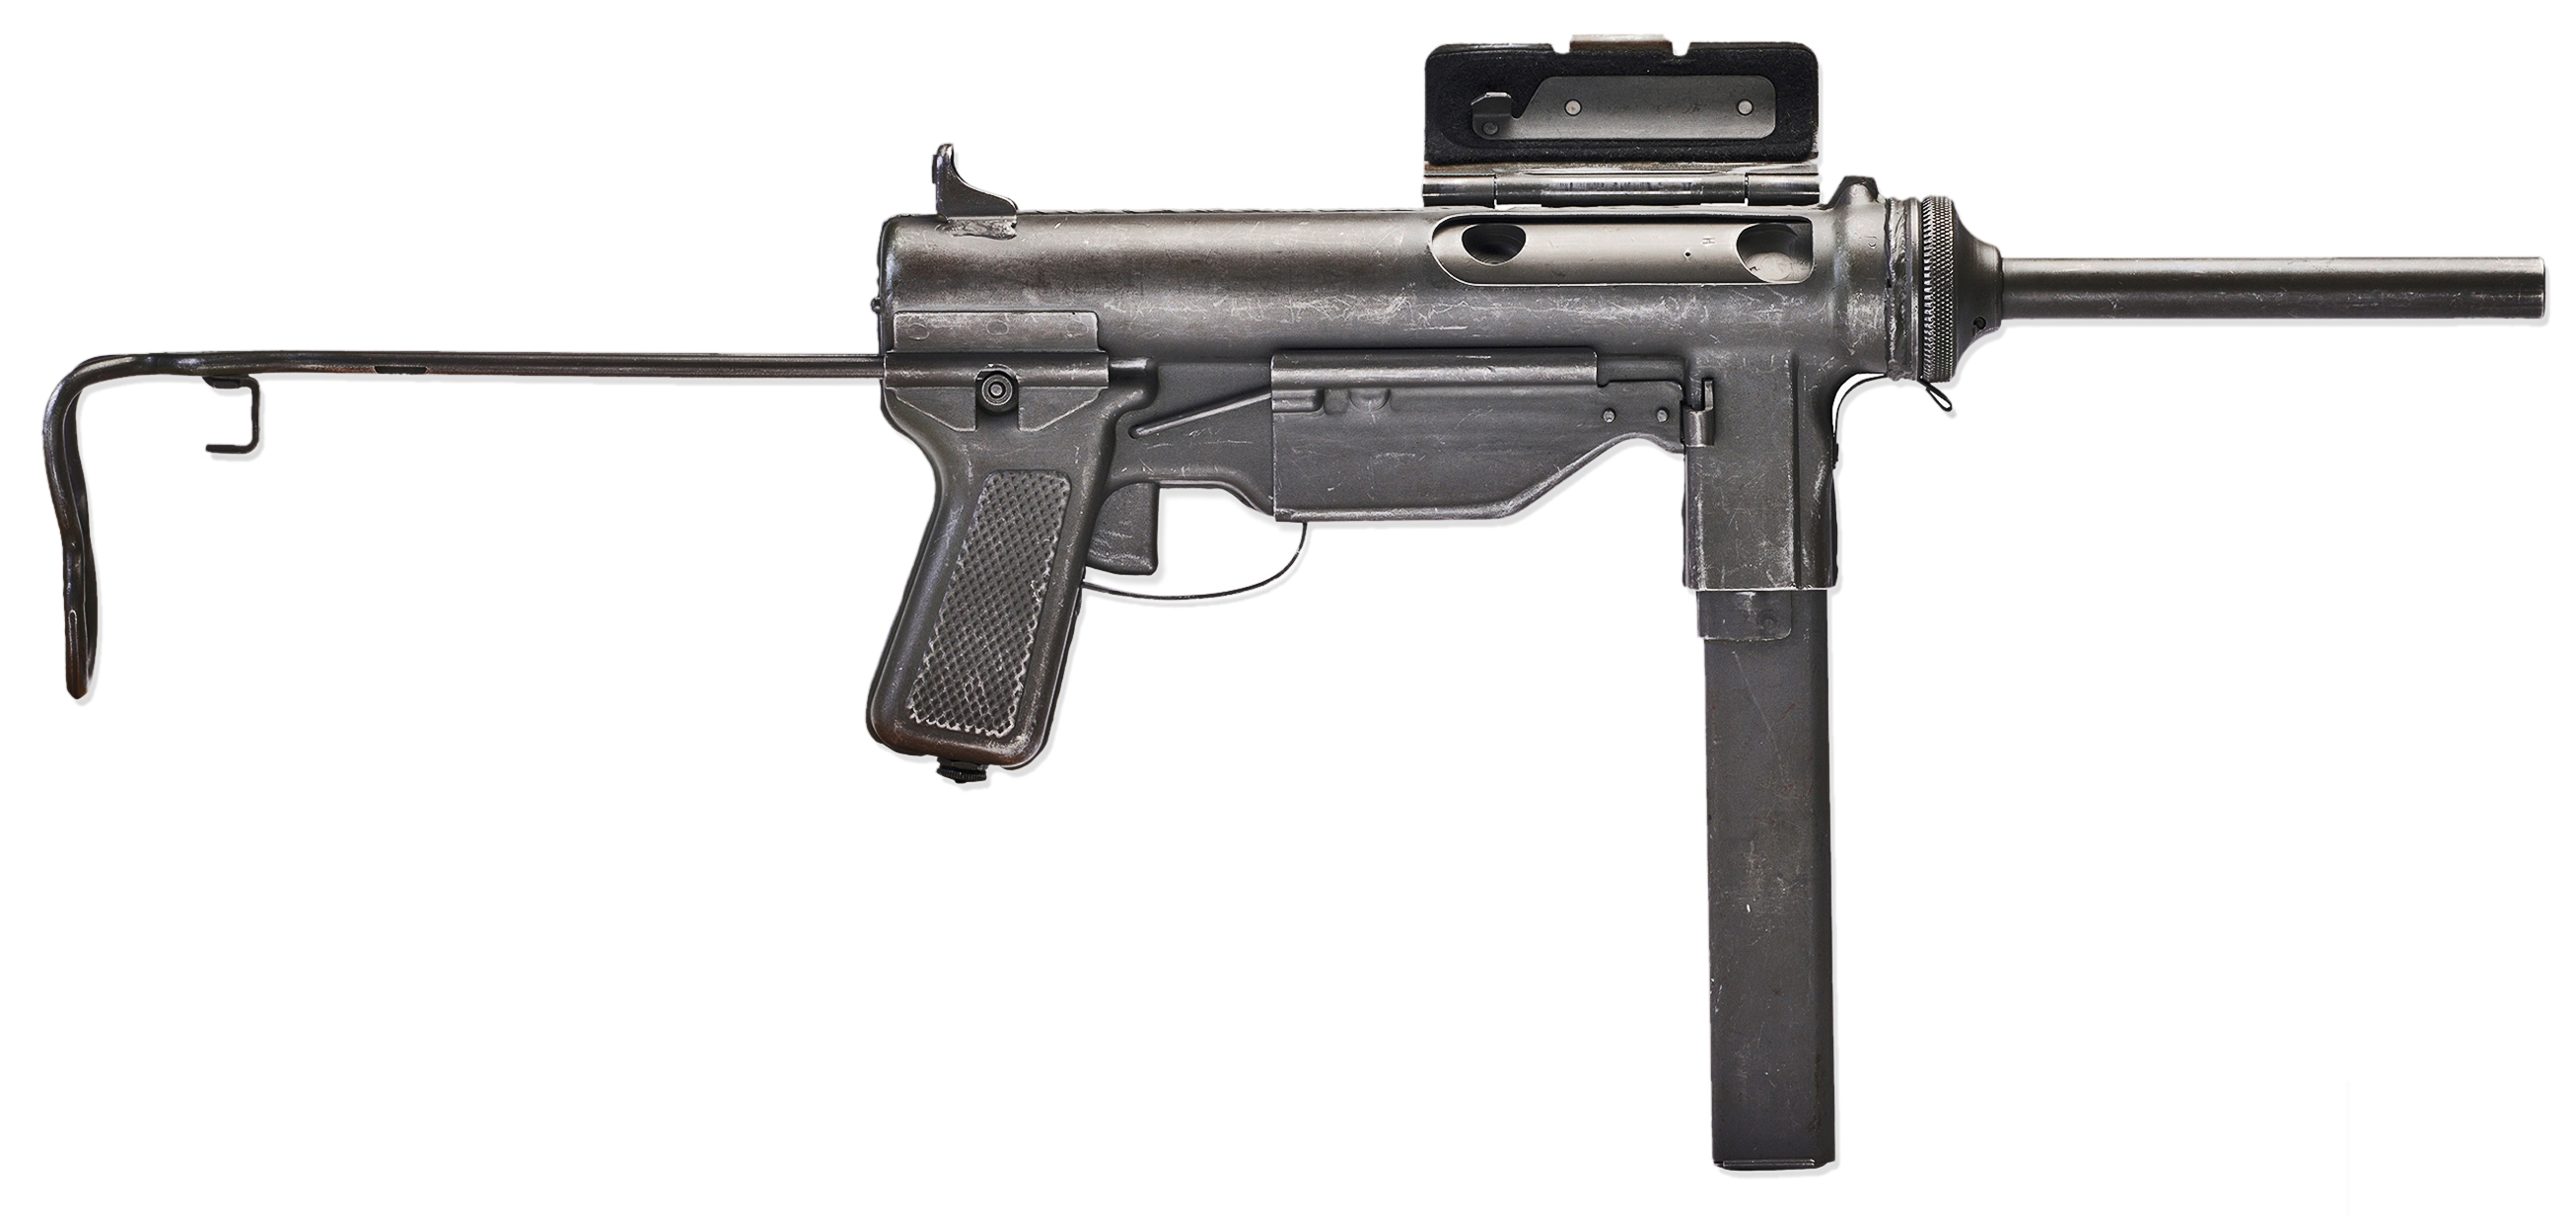 Ис пп. M3a1 Grease Gun. M3 Grease Gun.